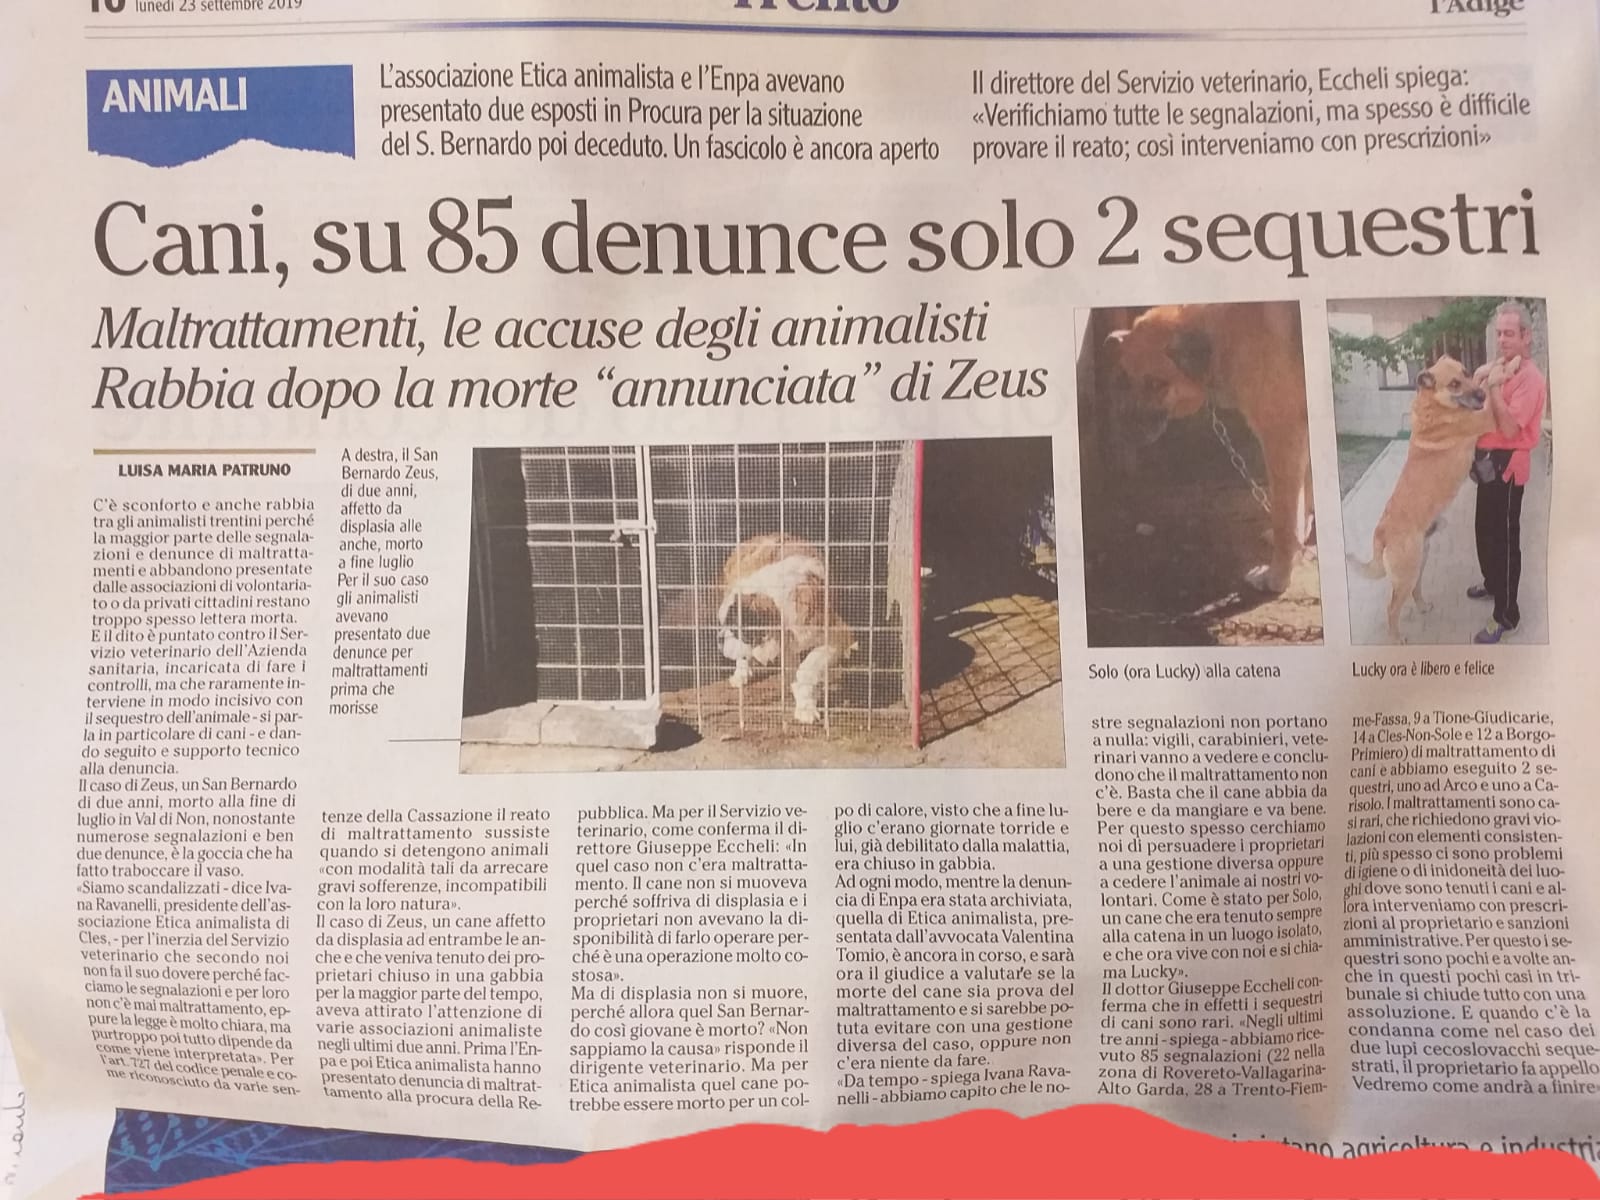 Cani maltrattati, solo 2 sequestri su 85 segnalazioni (L'Adige) WhatsApp Image 2019 09 23 at 14.19.13